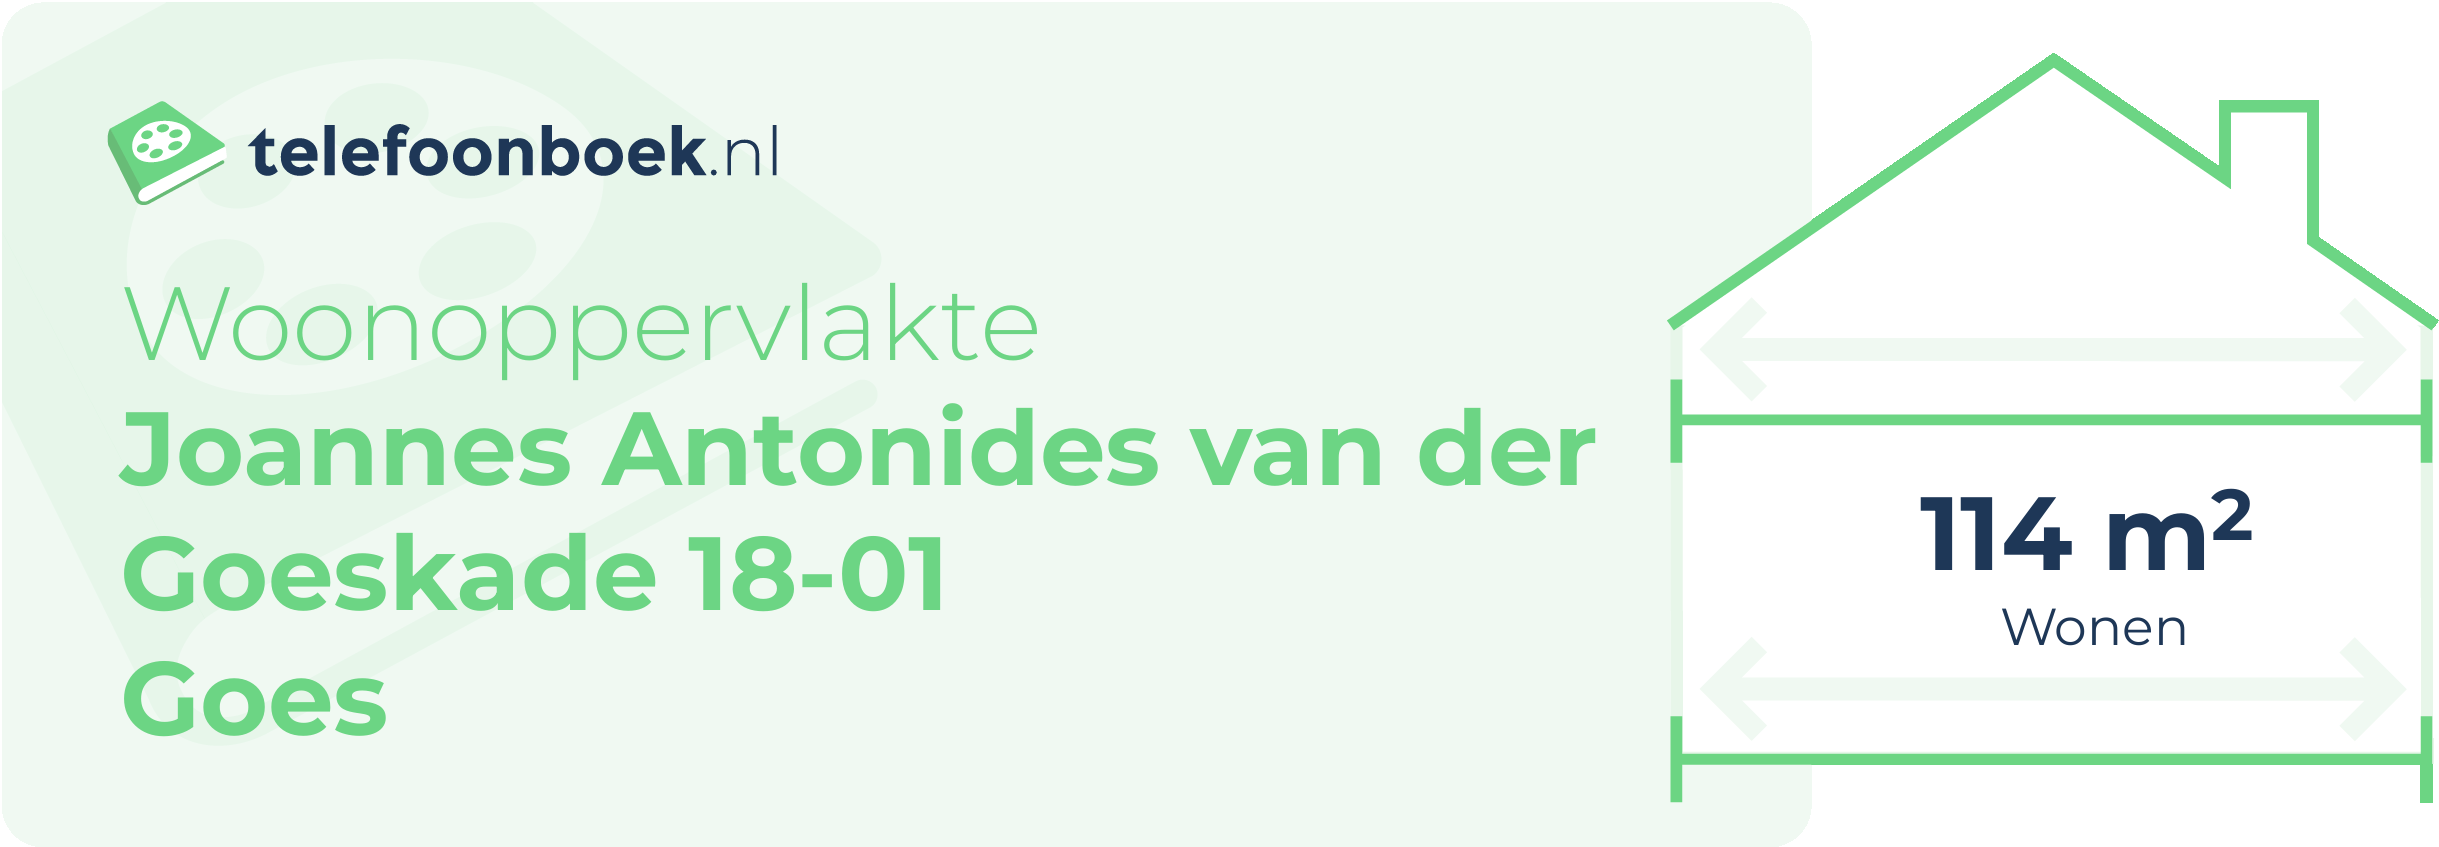 Woonoppervlakte Joannes Antonides Van Der Goeskade 18-01 Goes